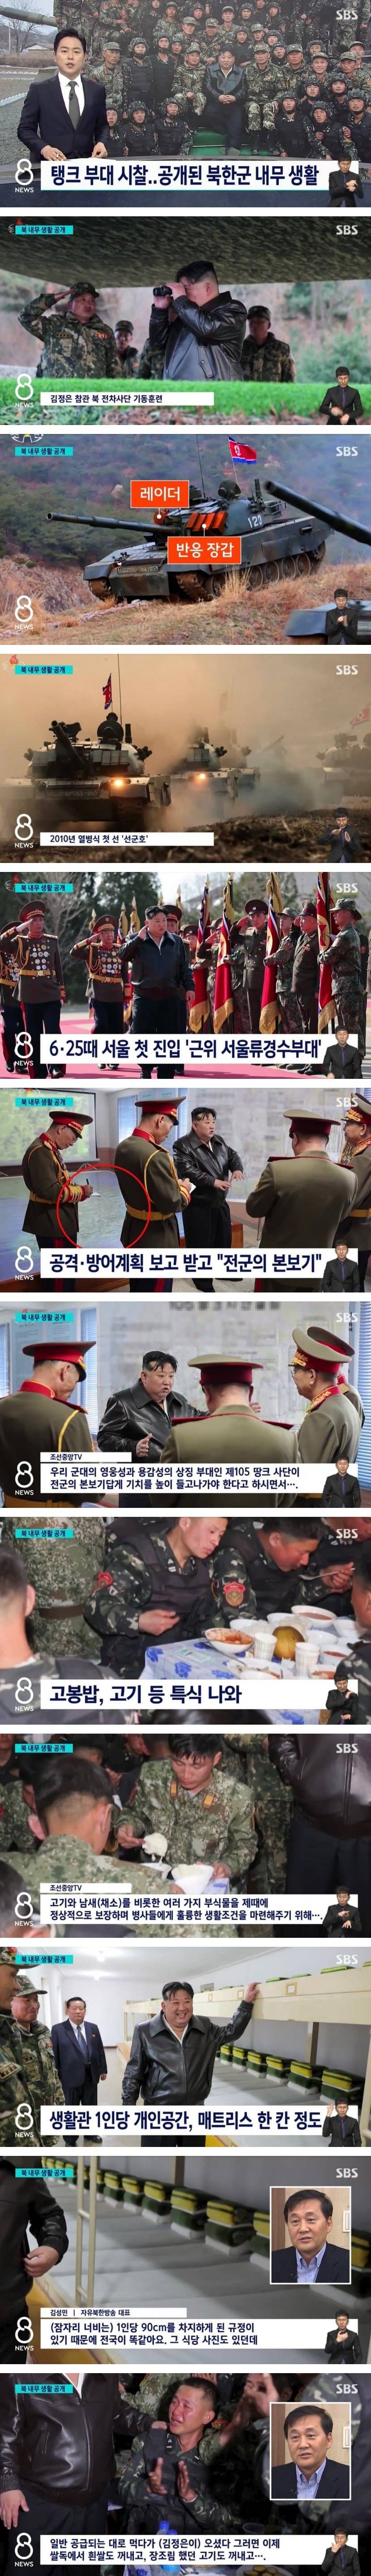 공개된 북한군 내무 생활